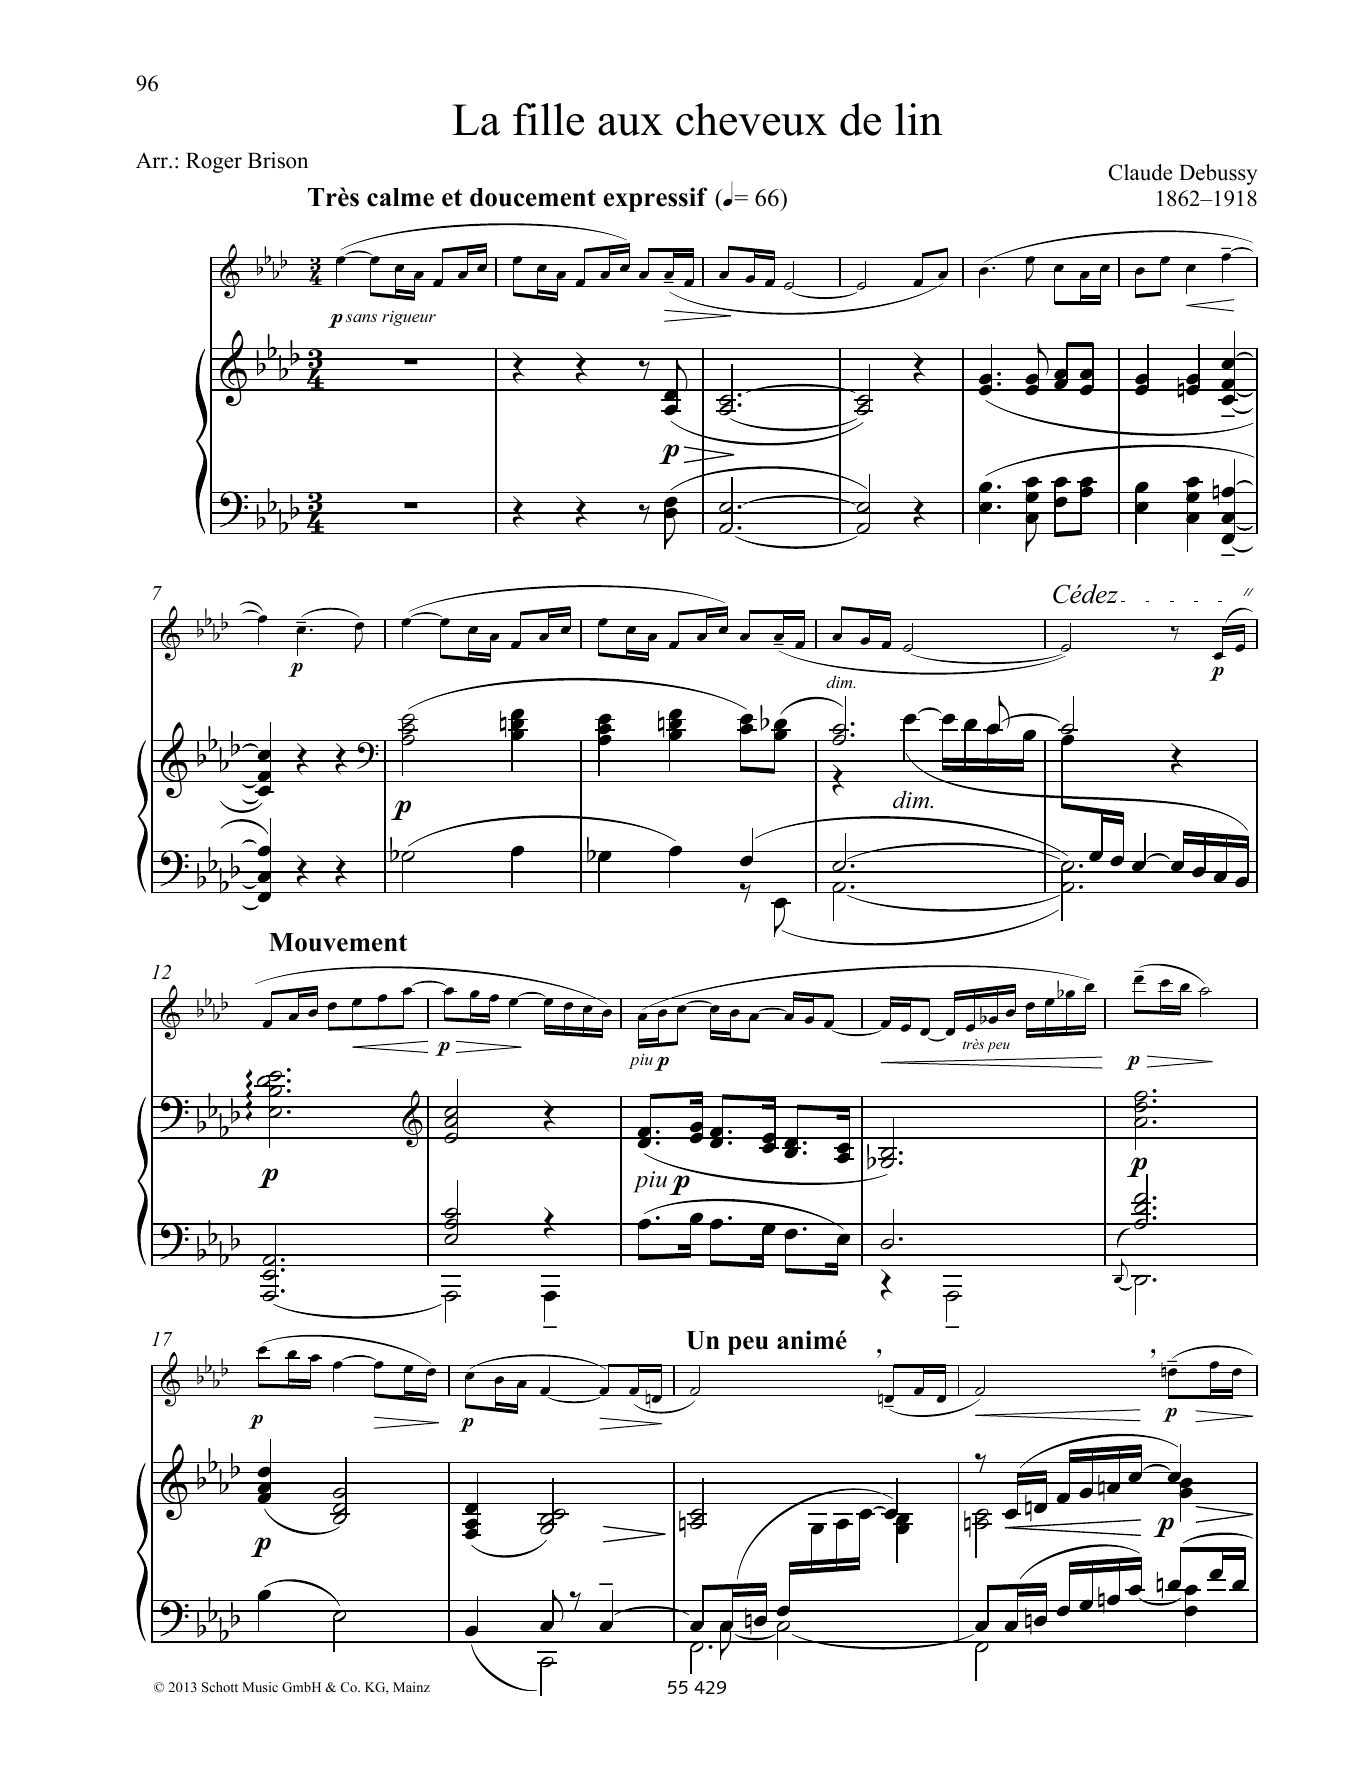 Claude Debussy La fille aux chevreux de lin Sheet Music Notes & Chords for Woodwind Solo - Download or Print PDF